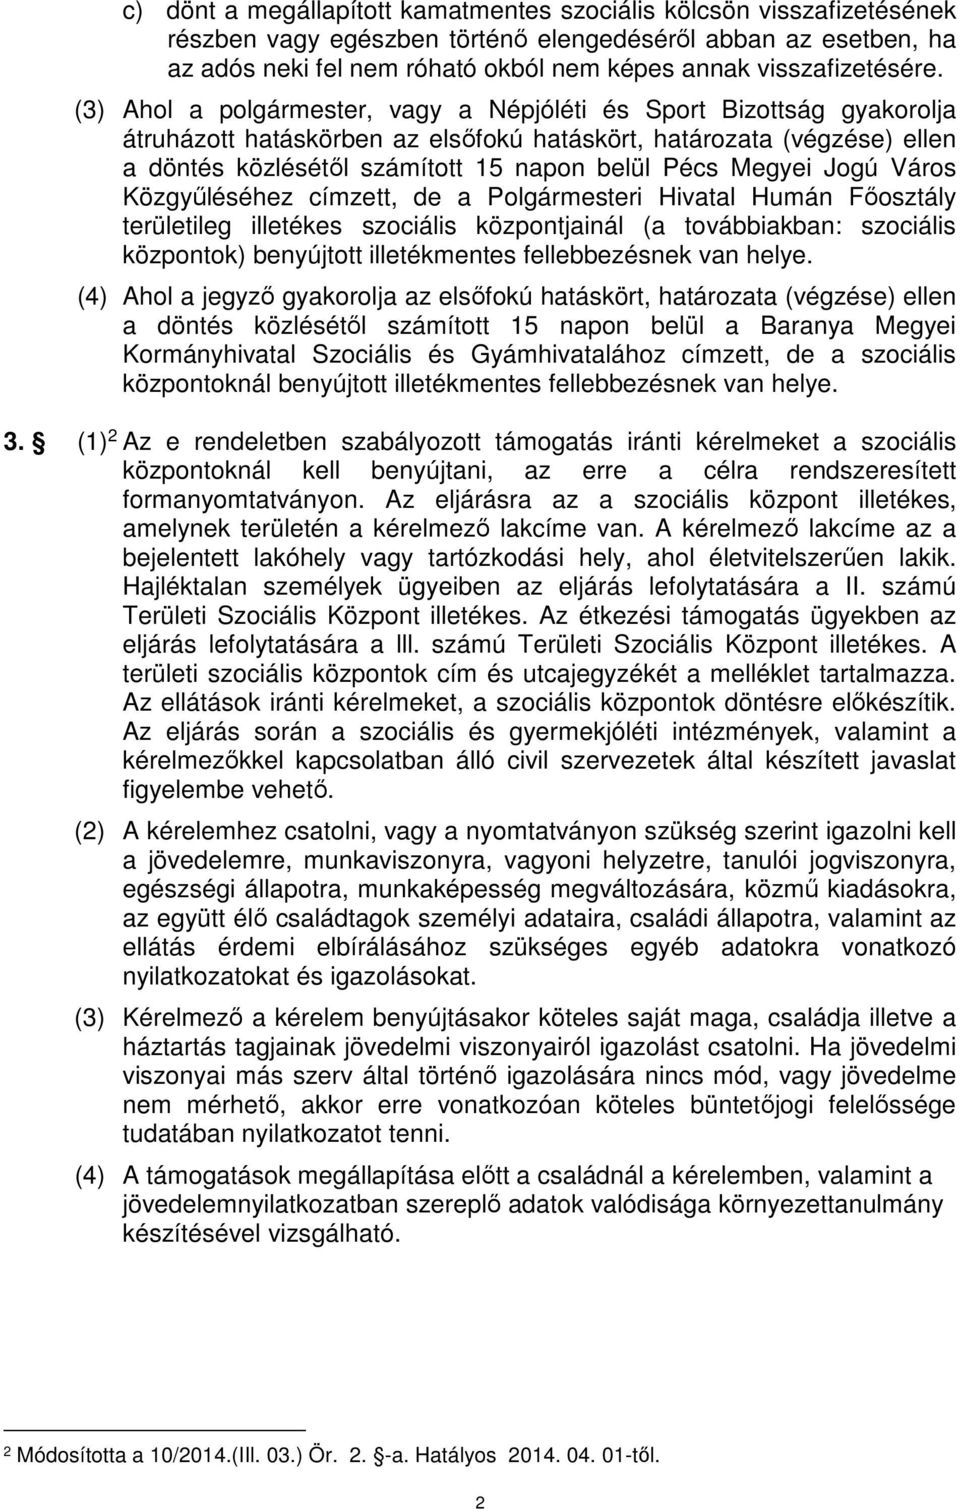 (3) Ahol a polgármester, vagy a Népjóléti és Sport Bizottság gyakorolja átruházott hatáskörben az elsőfokú hatáskört, határozata (végzése) ellen a döntés közlésétől számított 15 napon belül Pécs